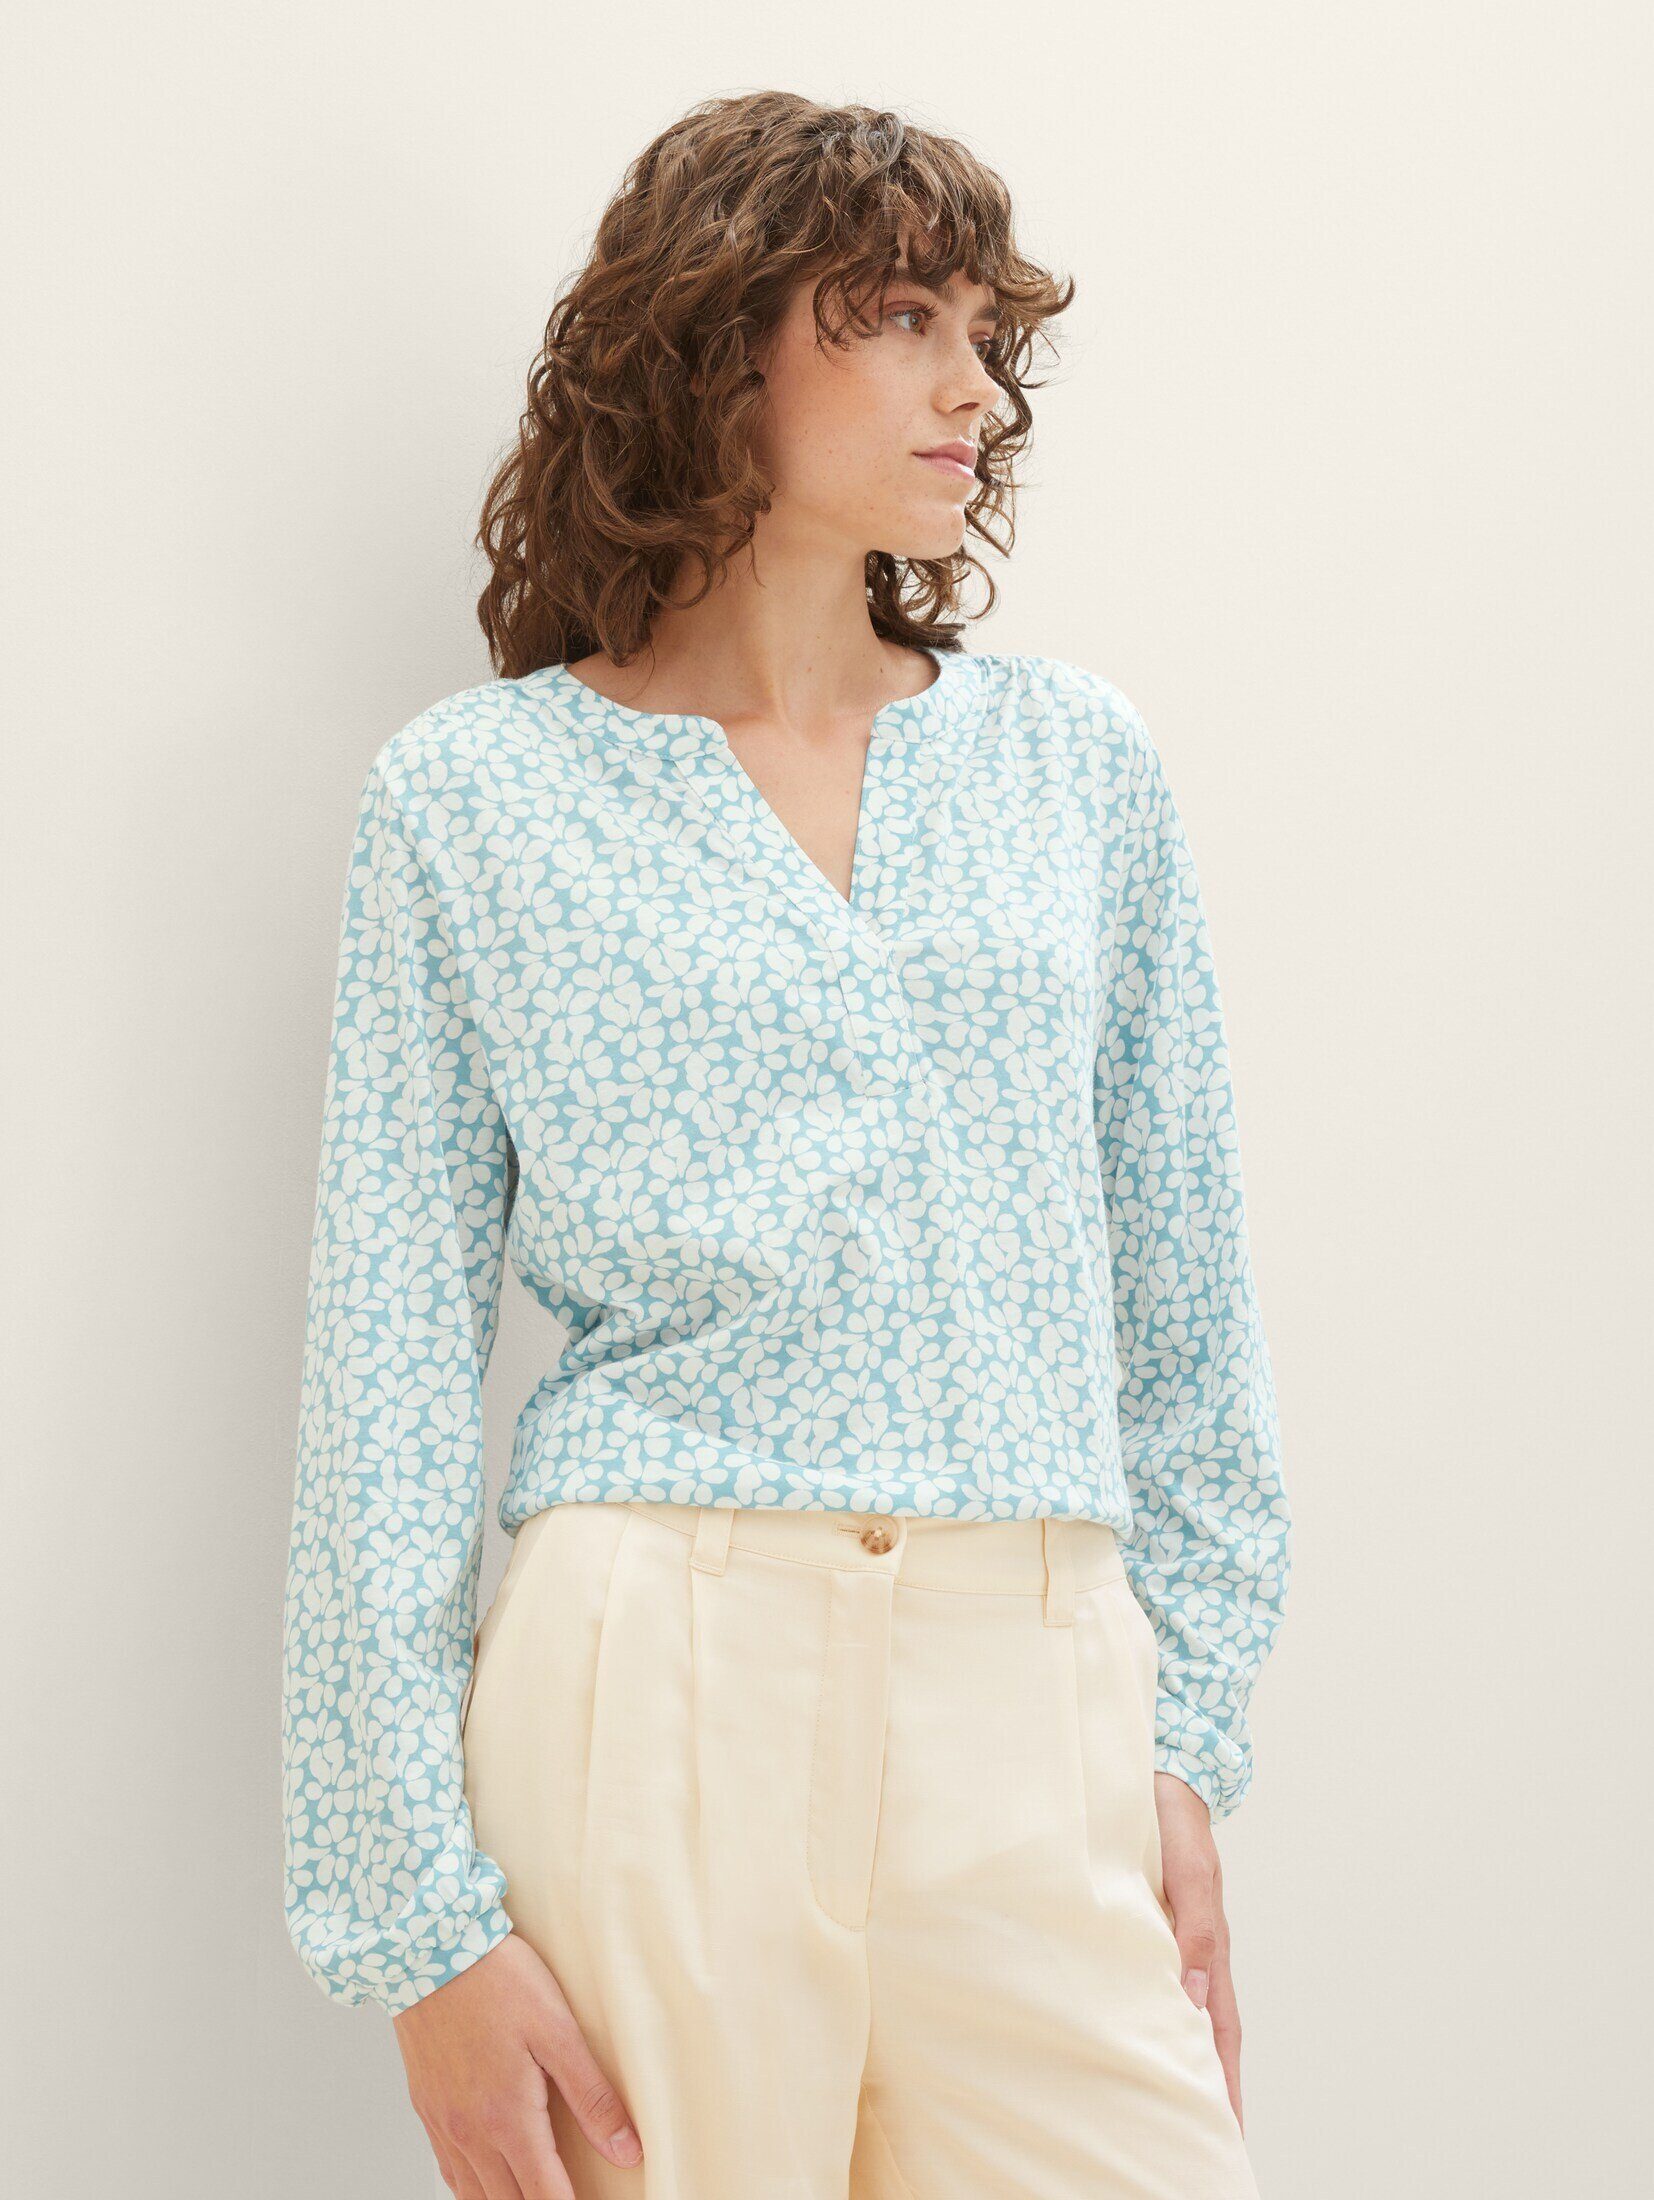 TAILOR Bluse TOM teal T-Shirt Allover-Print floral design mit